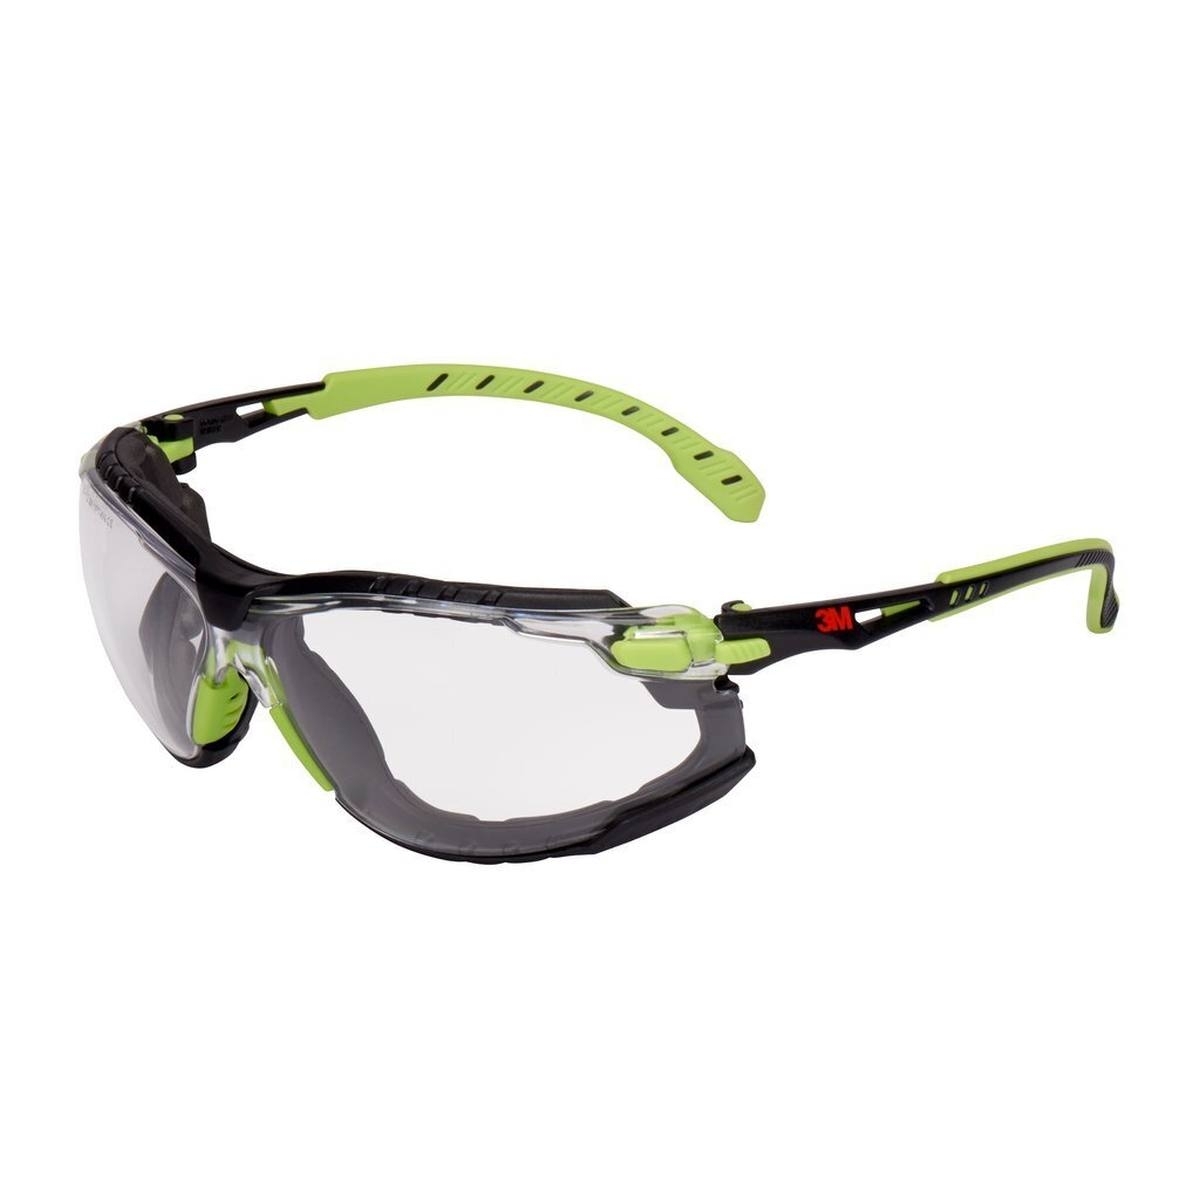 Gafas de protección 3M Solus 1000, patillas verde/negro, revestimiento Scotchgard antivaho/antirayas (K